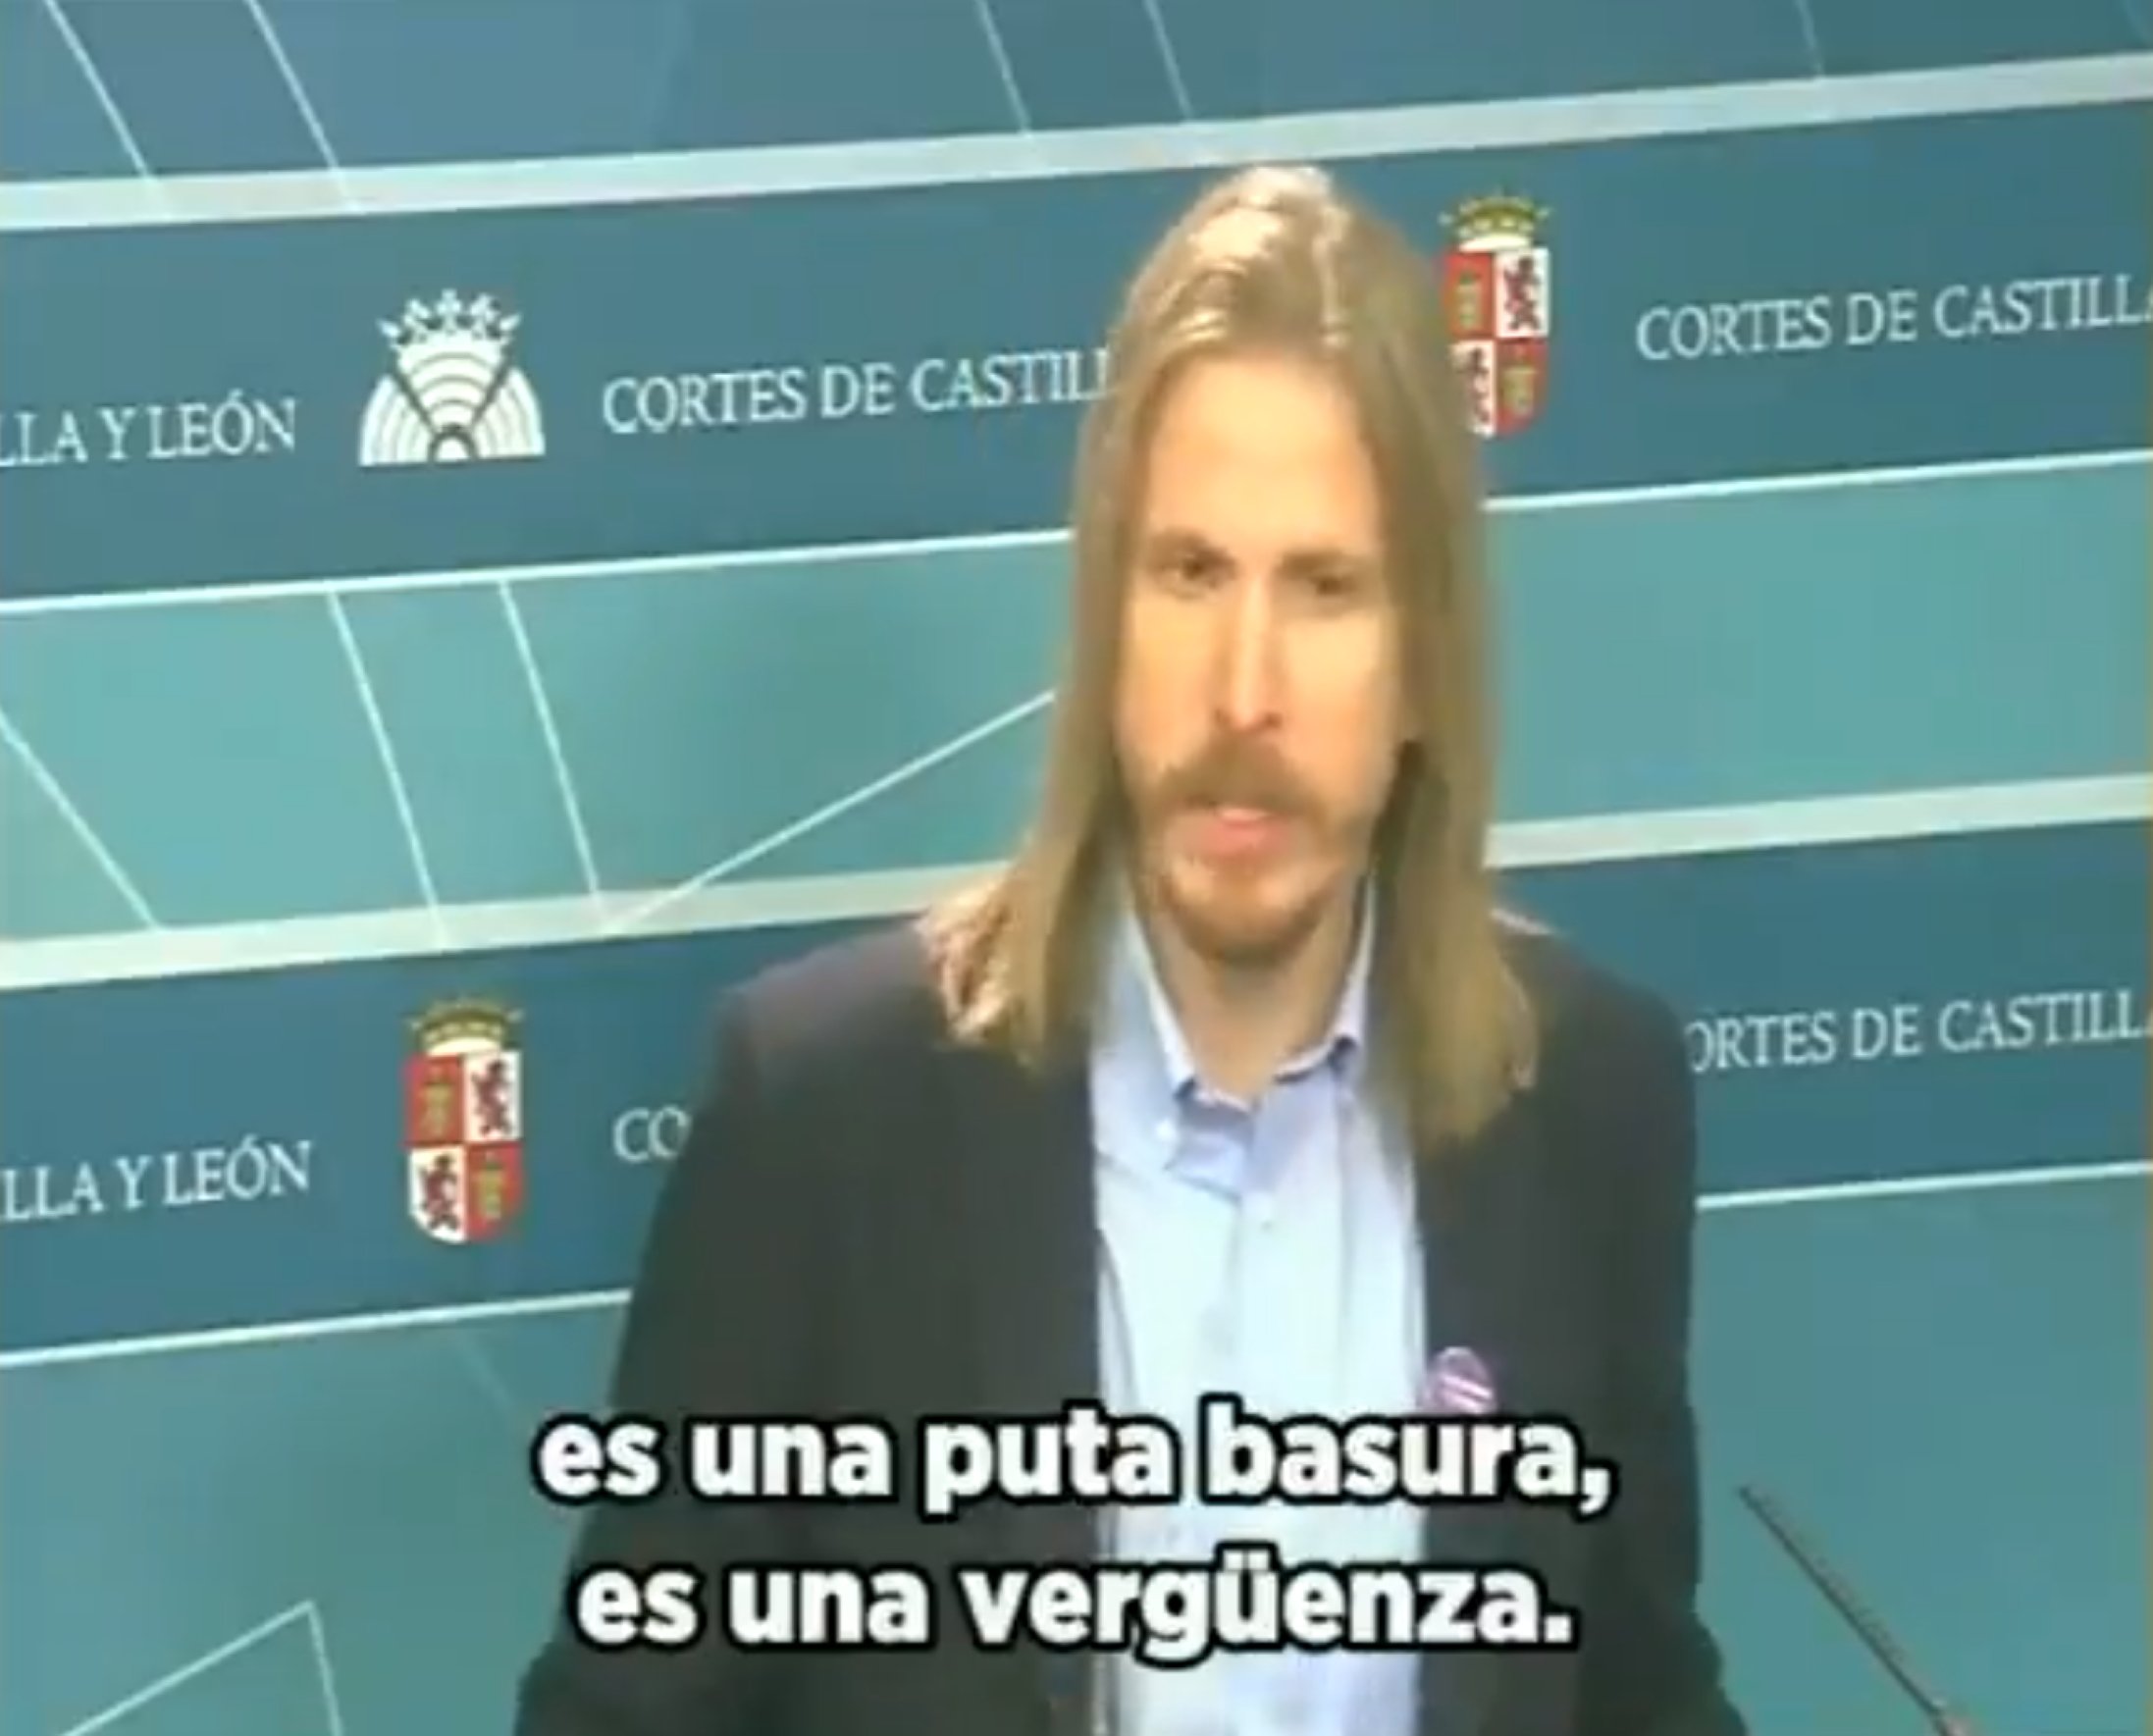 El vídeo de un político español aplastando a VOX arrasa: "Puta basura"